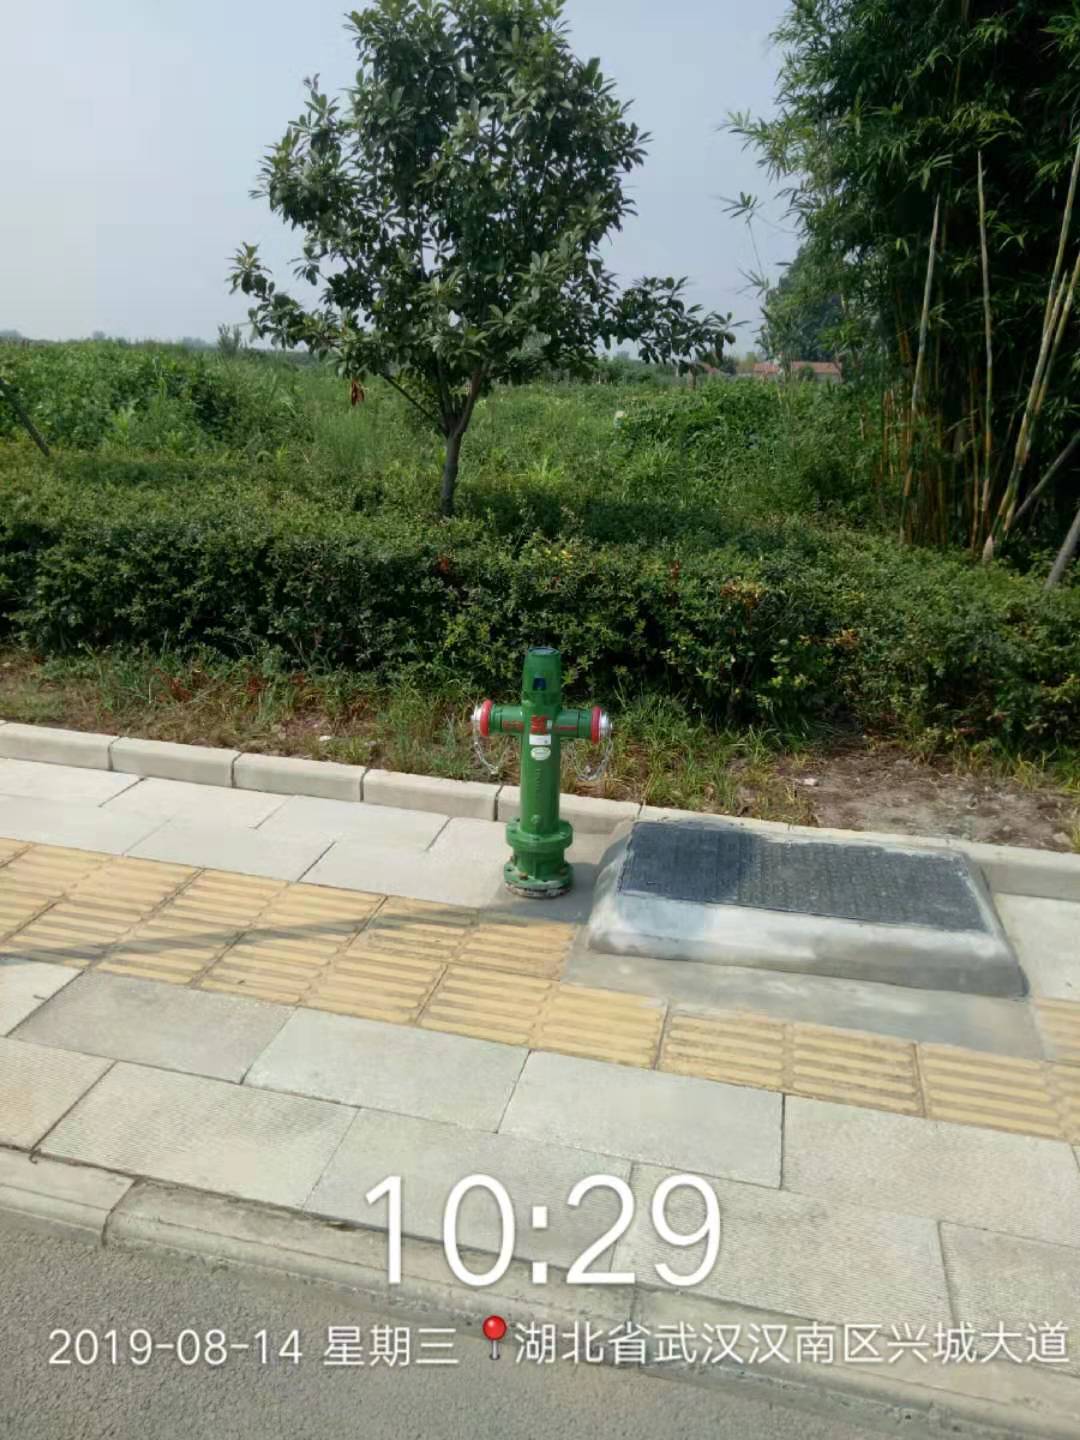 <b>【武汉水务】安装绿色消防栓 收取市政用水费</b>